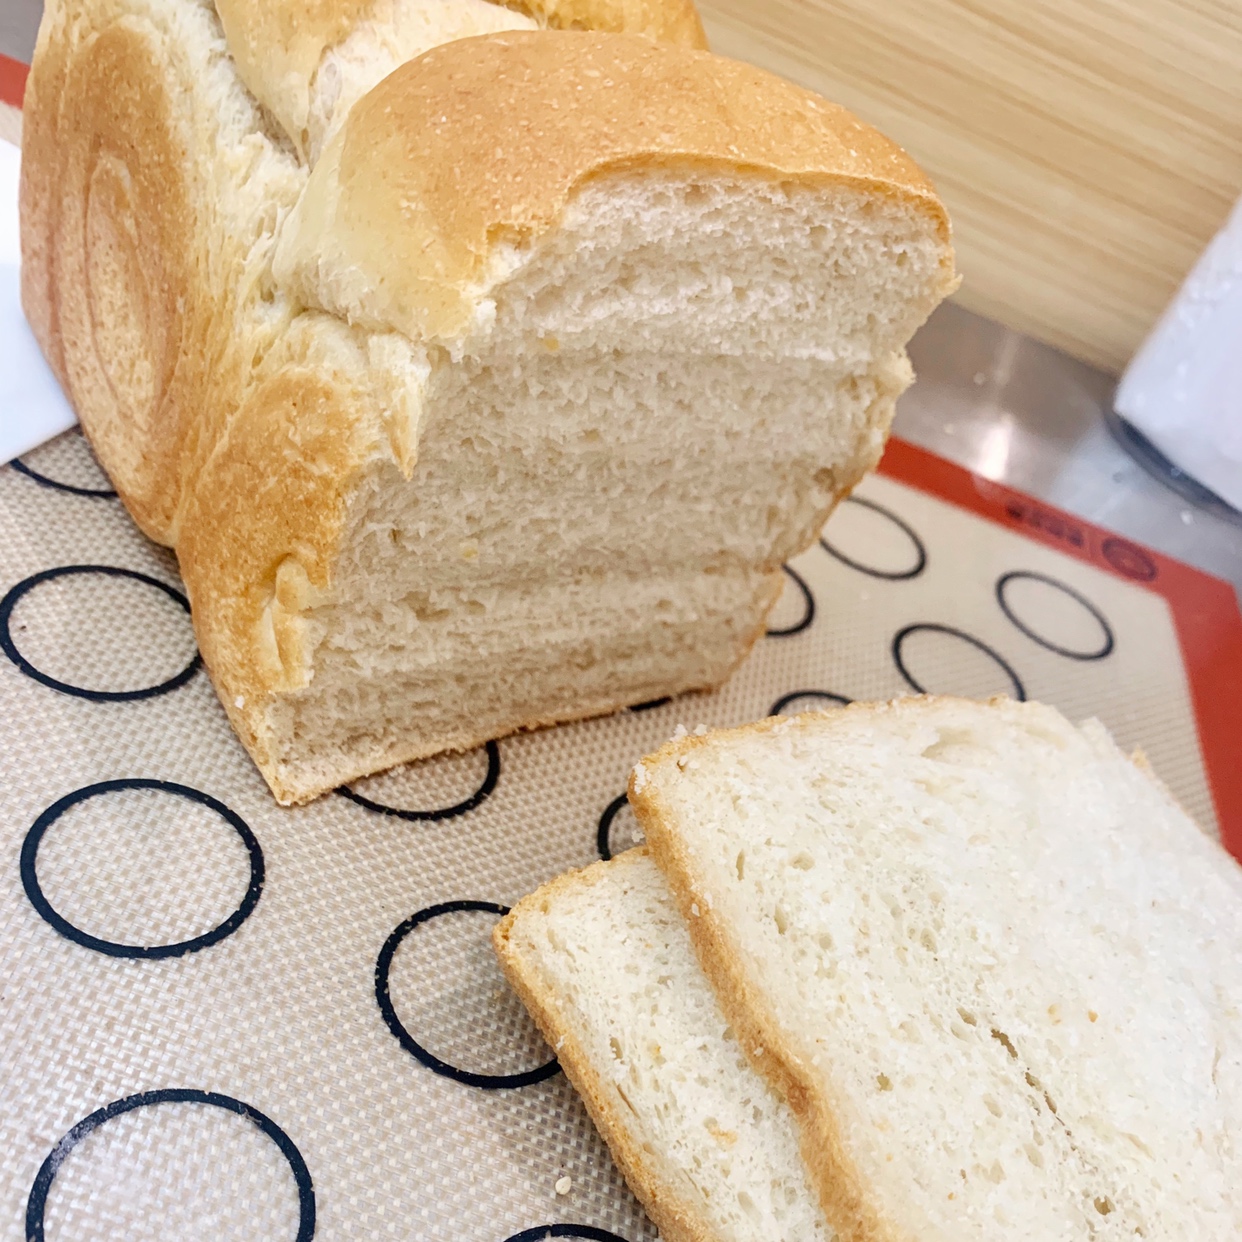 燕麦片替代全麦面粉的全麦面包